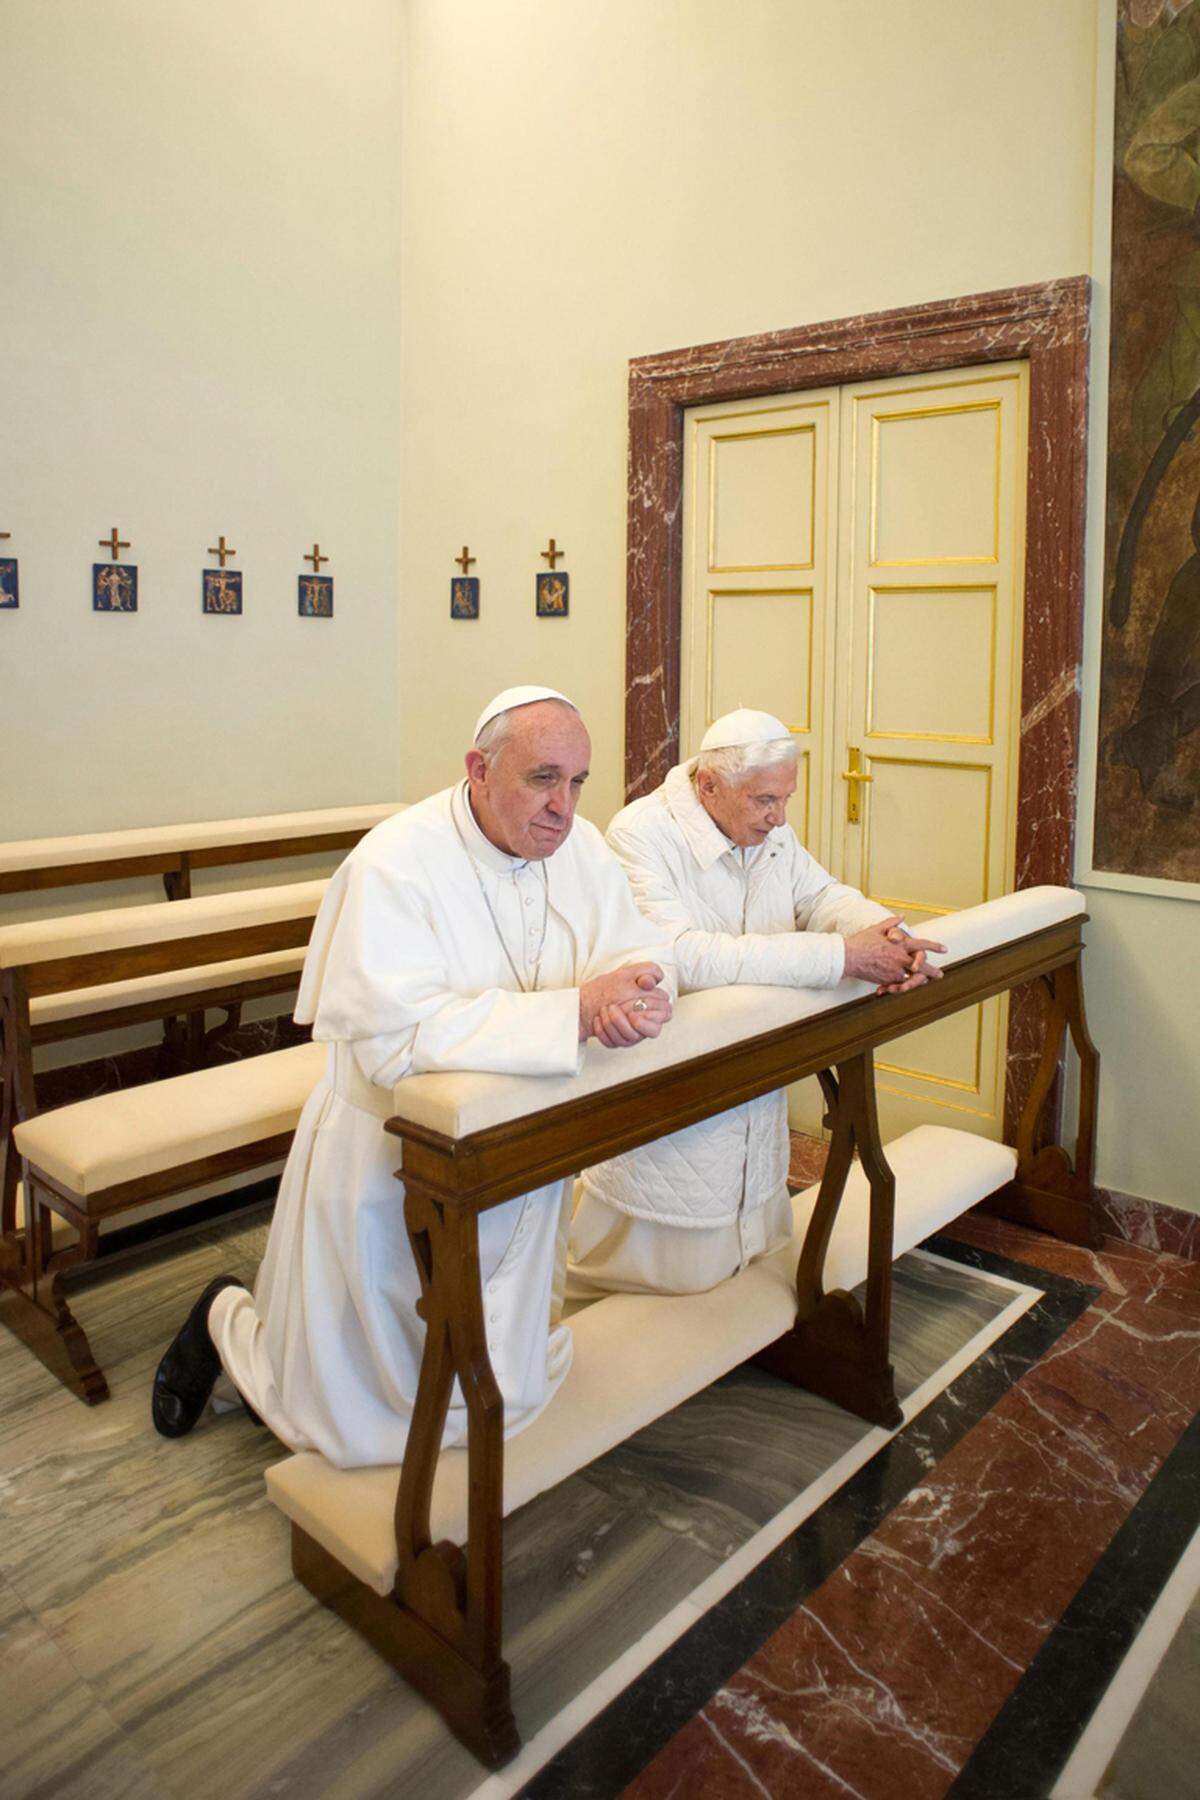 Als erster Papst verzichtete Franziskus bisher auf die Nutzung der Villa. Bild: Franziskus mit seinem Vorgänger Benedkit XVI. bei einem Gebet in Castel Gandolfo im Vorjahr.